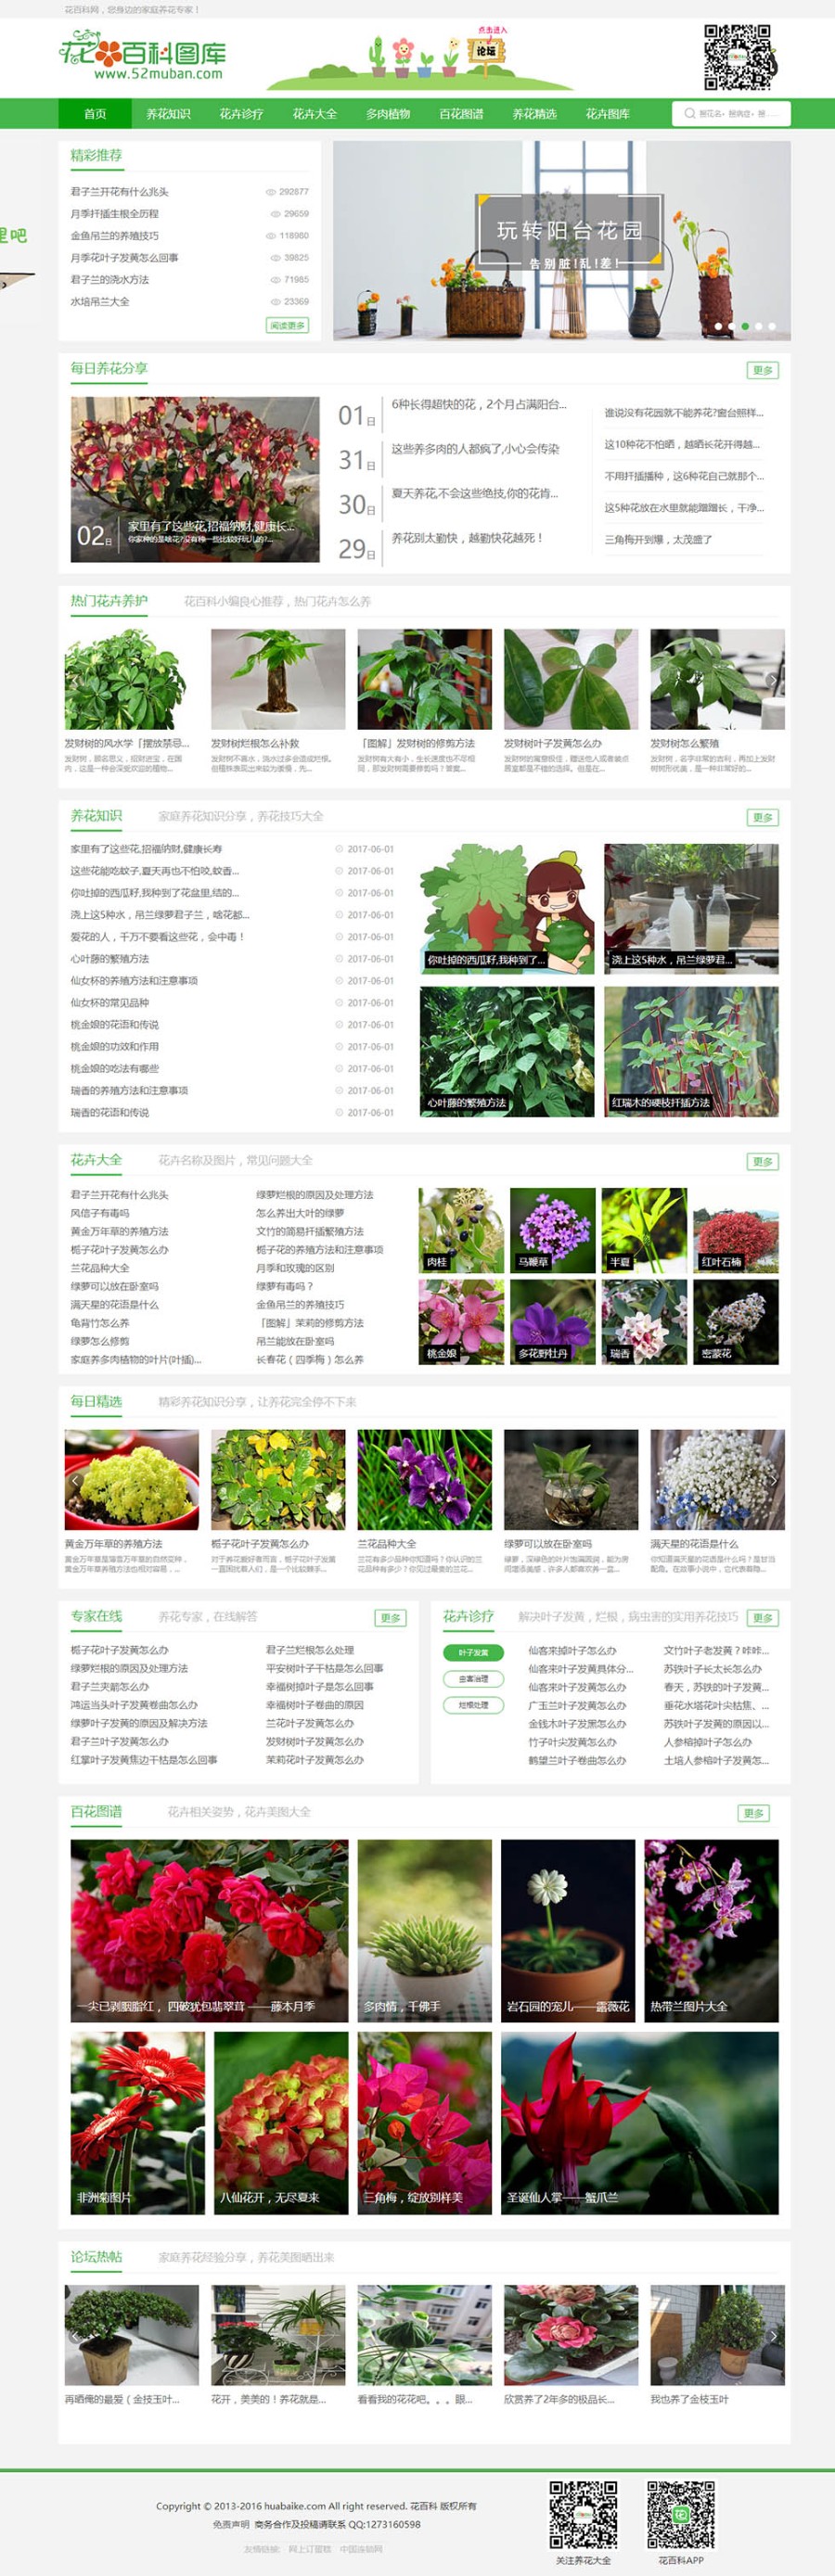 新闻帝国CMS源代码模板模仿《花百科》专业花卉站花卉信息